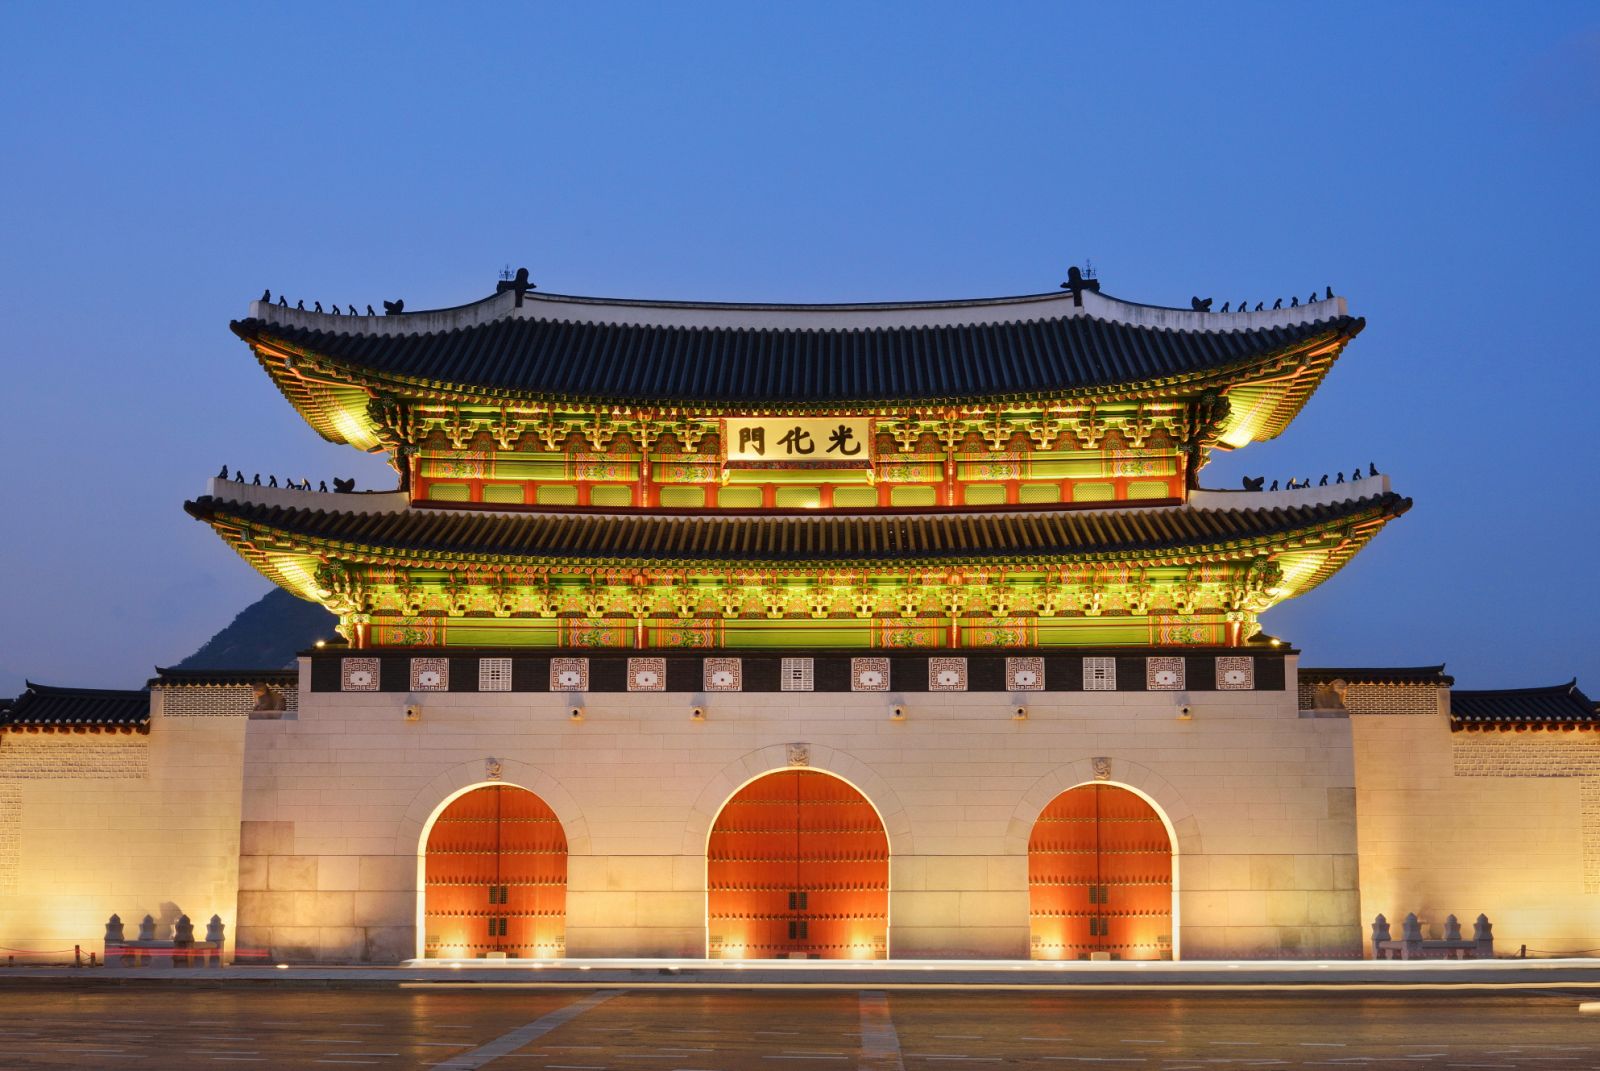 Top địa điểm du lịch Seoul, Hàn Quốc hot nhất Tết Nguyên Đán 2019 